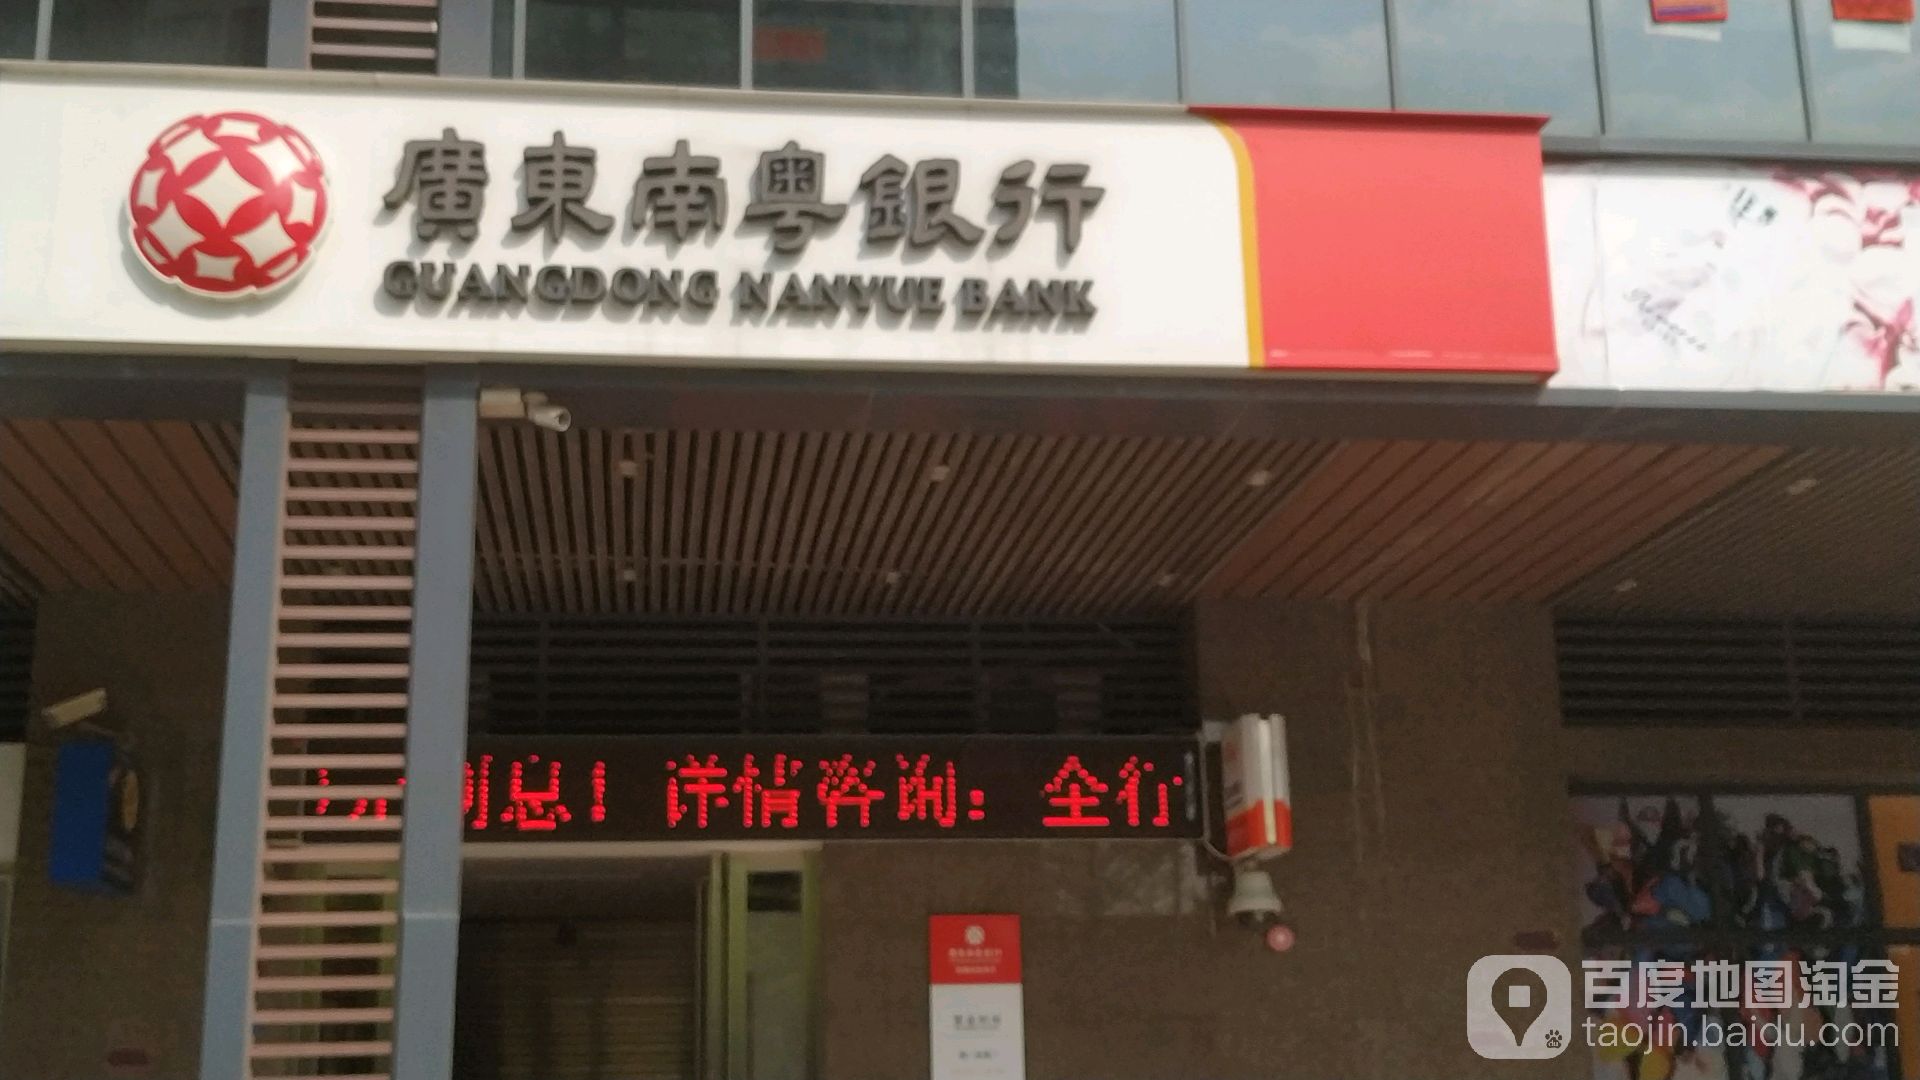 廣東南粵銀行24小時自助銀行